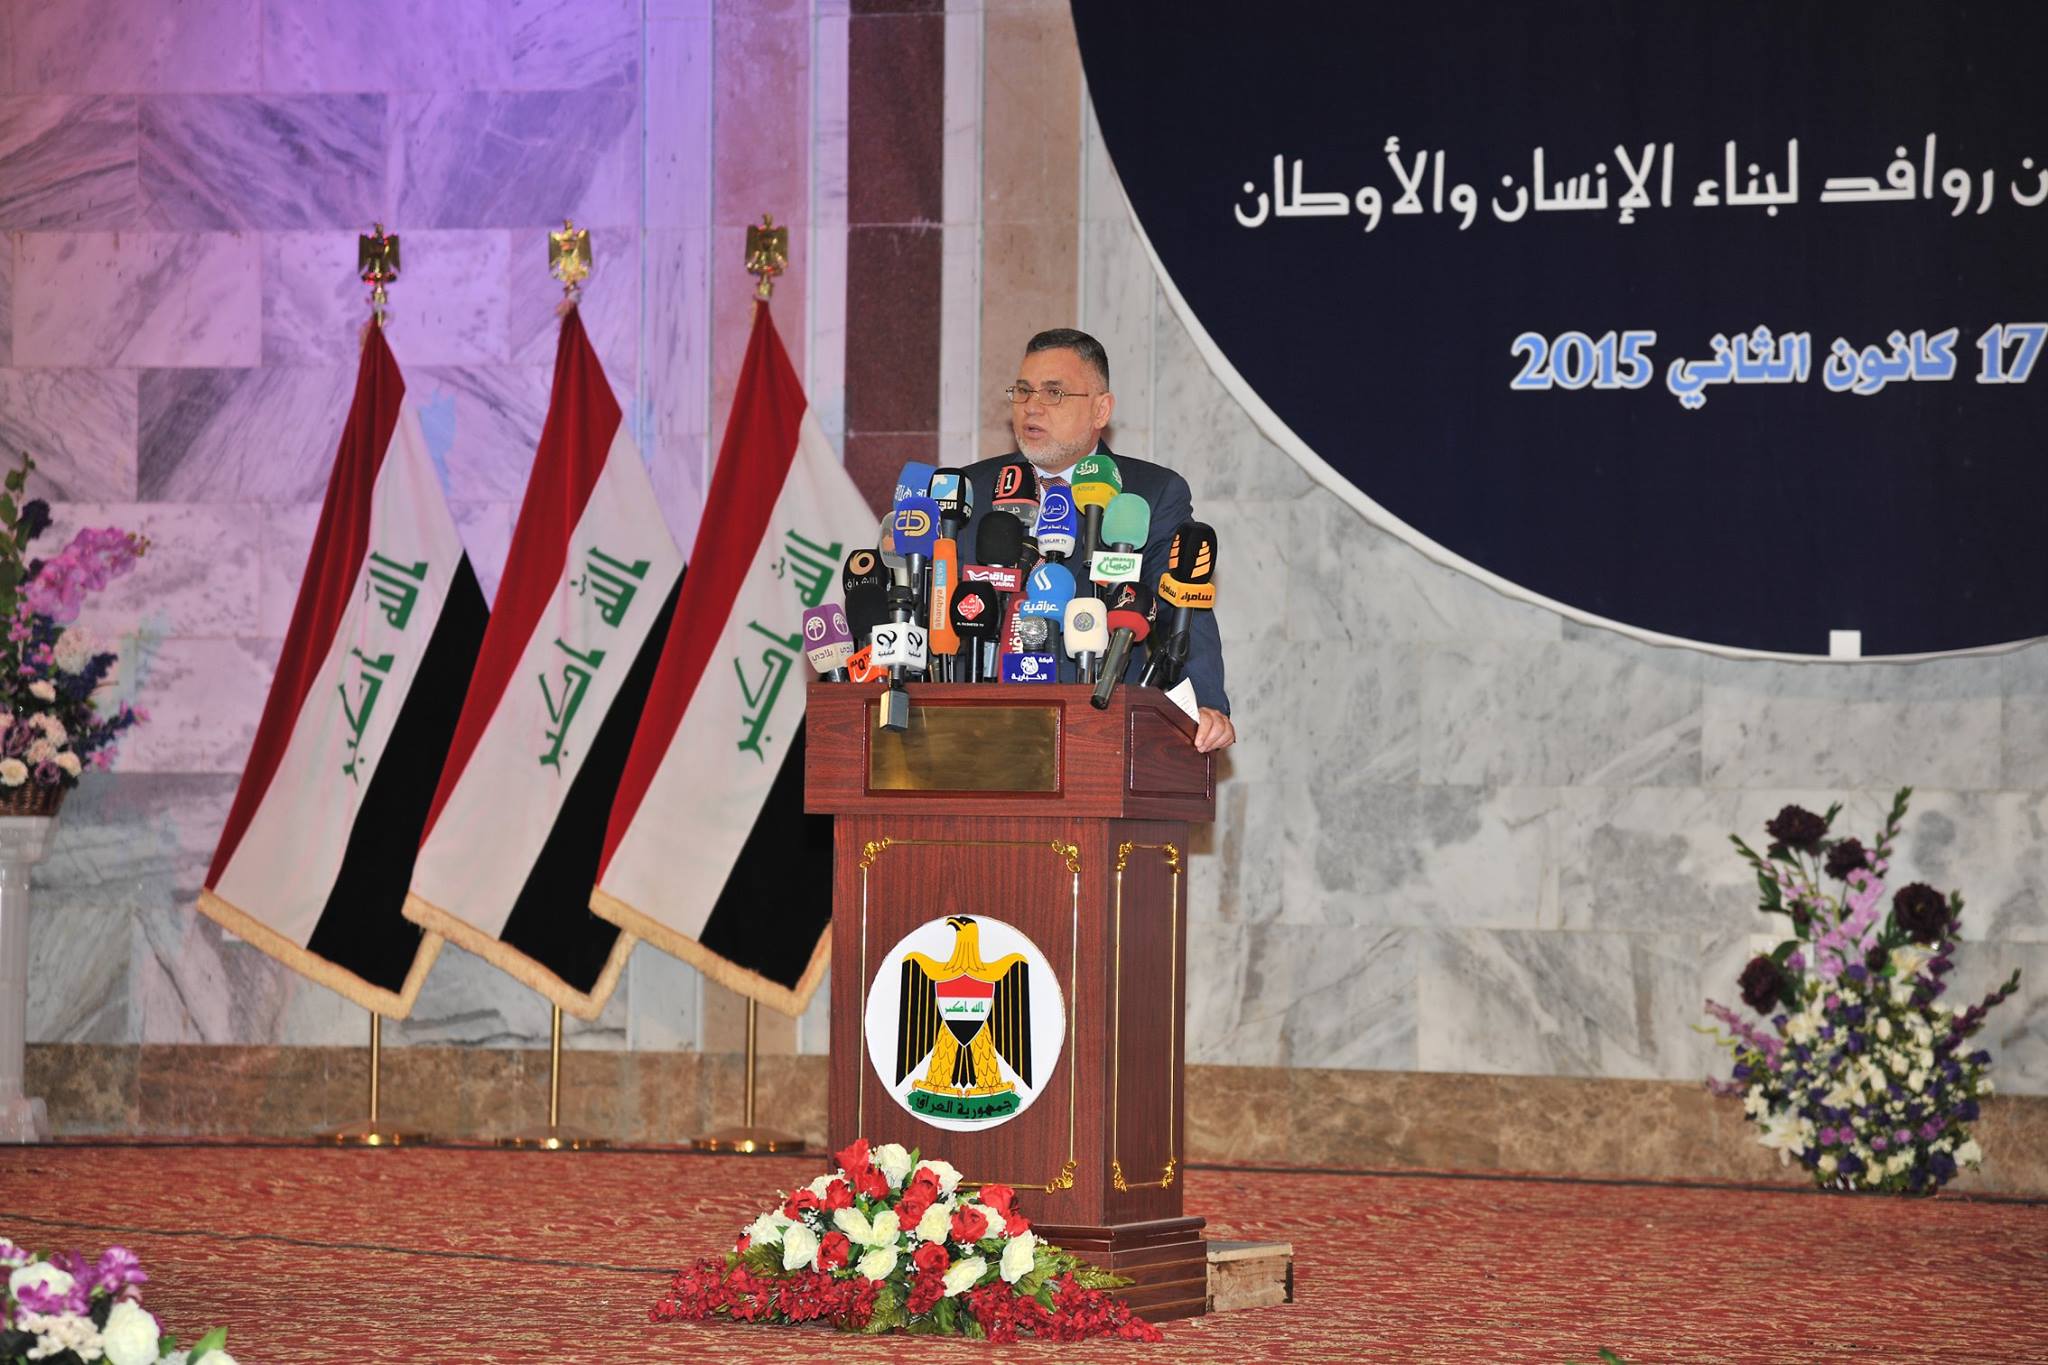 ديوان الوقف السني يحتضن المؤتمر الوطني للاديان والمذاهب في العراق بنسخته الثالثة (6)